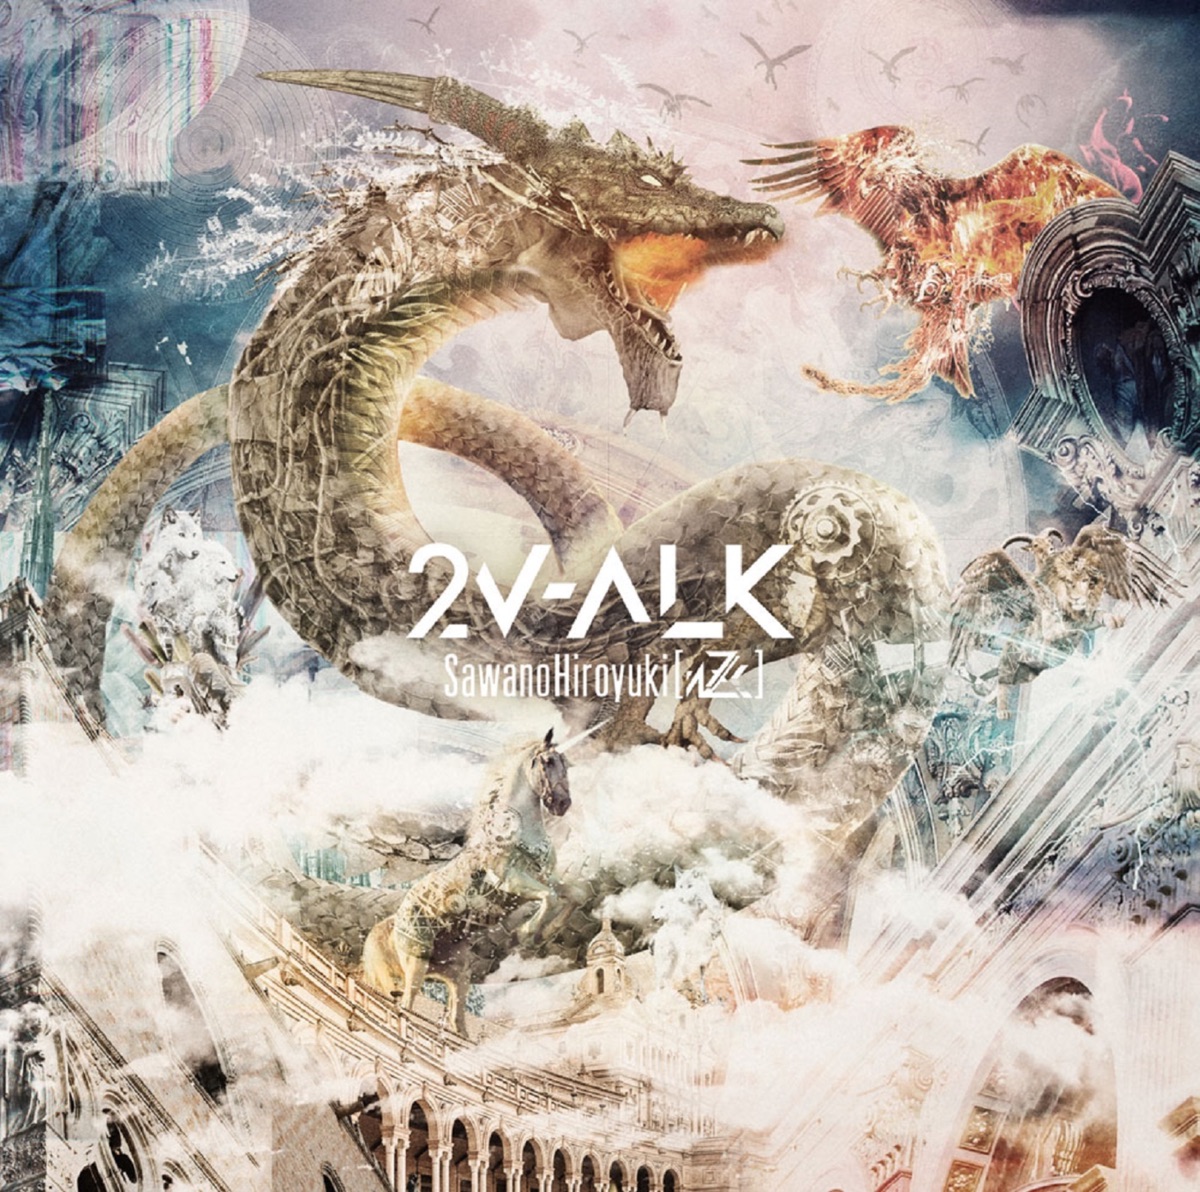 Cover art for『SawanoHiroyuki[nZk]:Tielle - VV-ALK』from the release『2V-ALK』